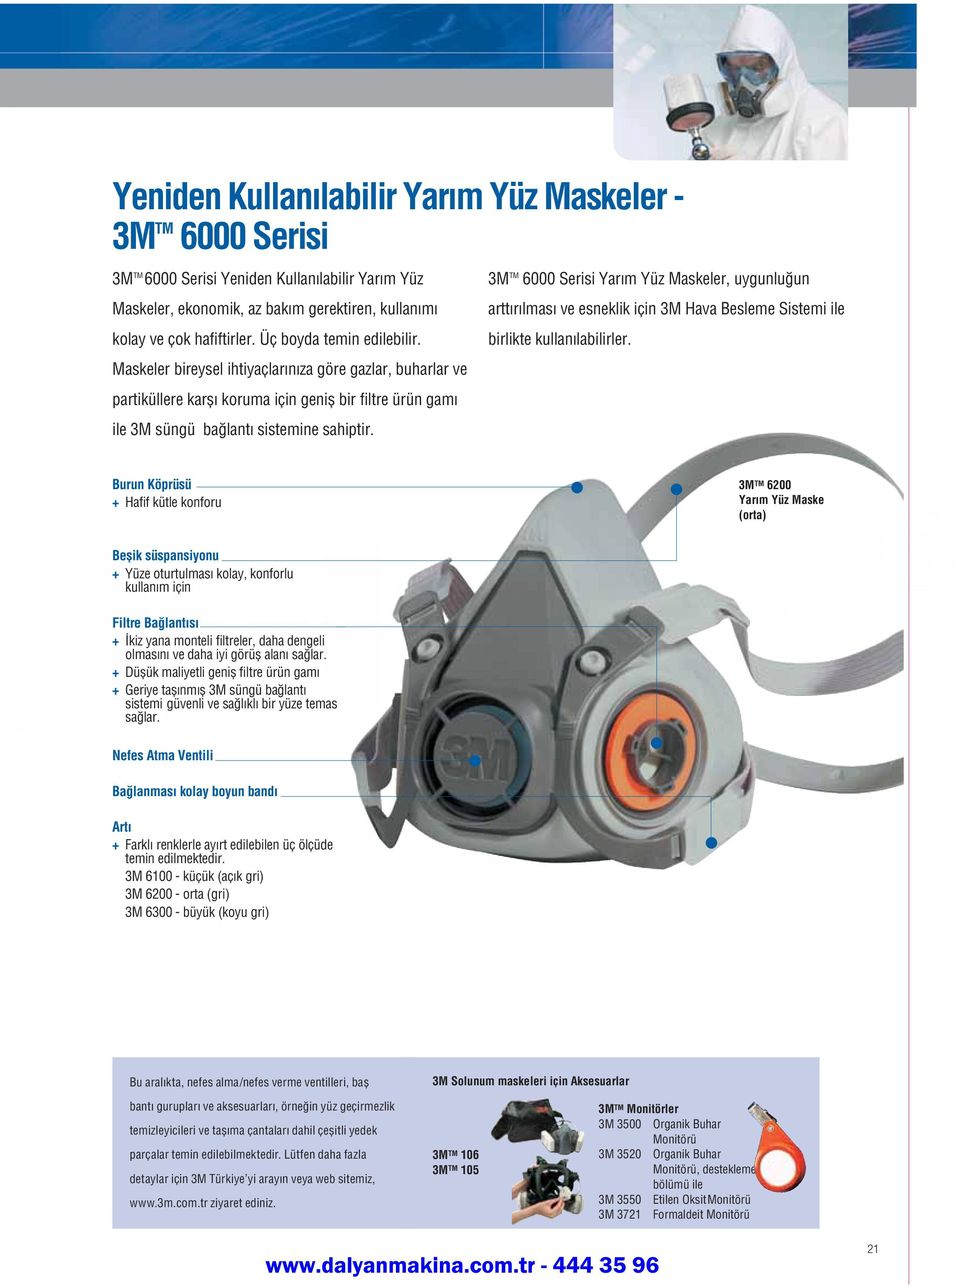 3M TM 6000 Serisi Yarım Yüz Maskeler, uygunluğun arttırılması ve esneklik için 3M Hava Besleme Sistemi ile birlikte kullanılabilirler.